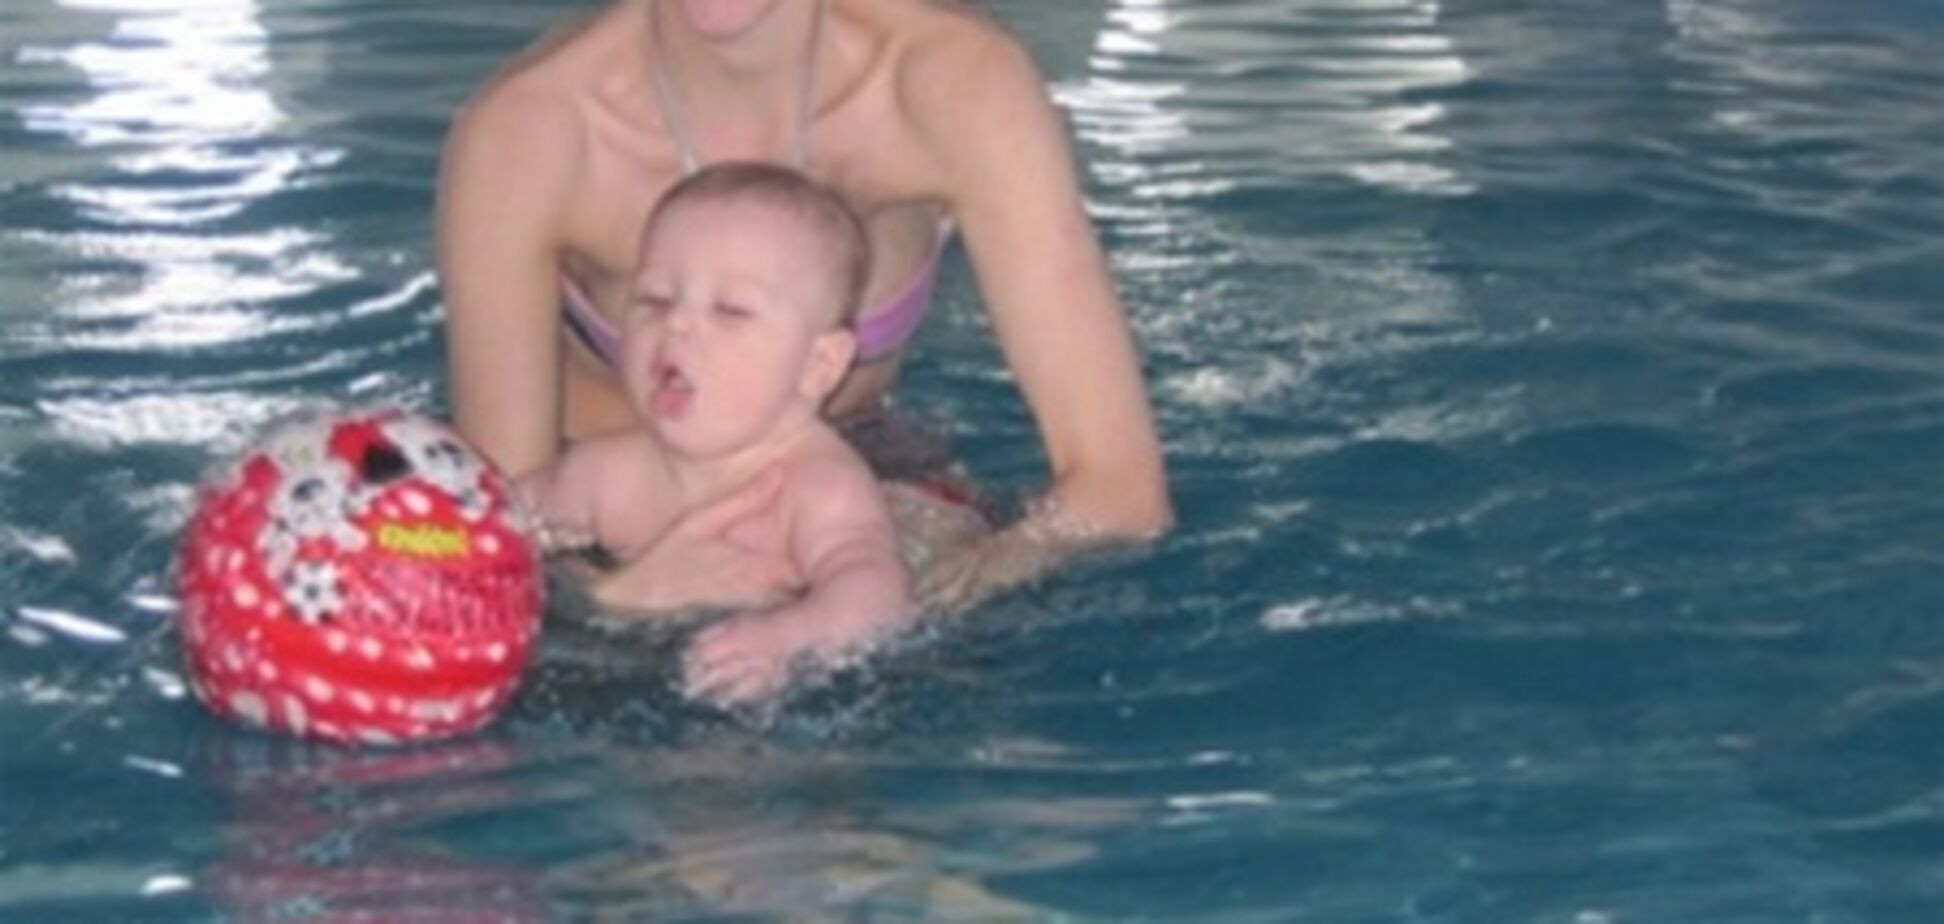 Учим ребенка плавать